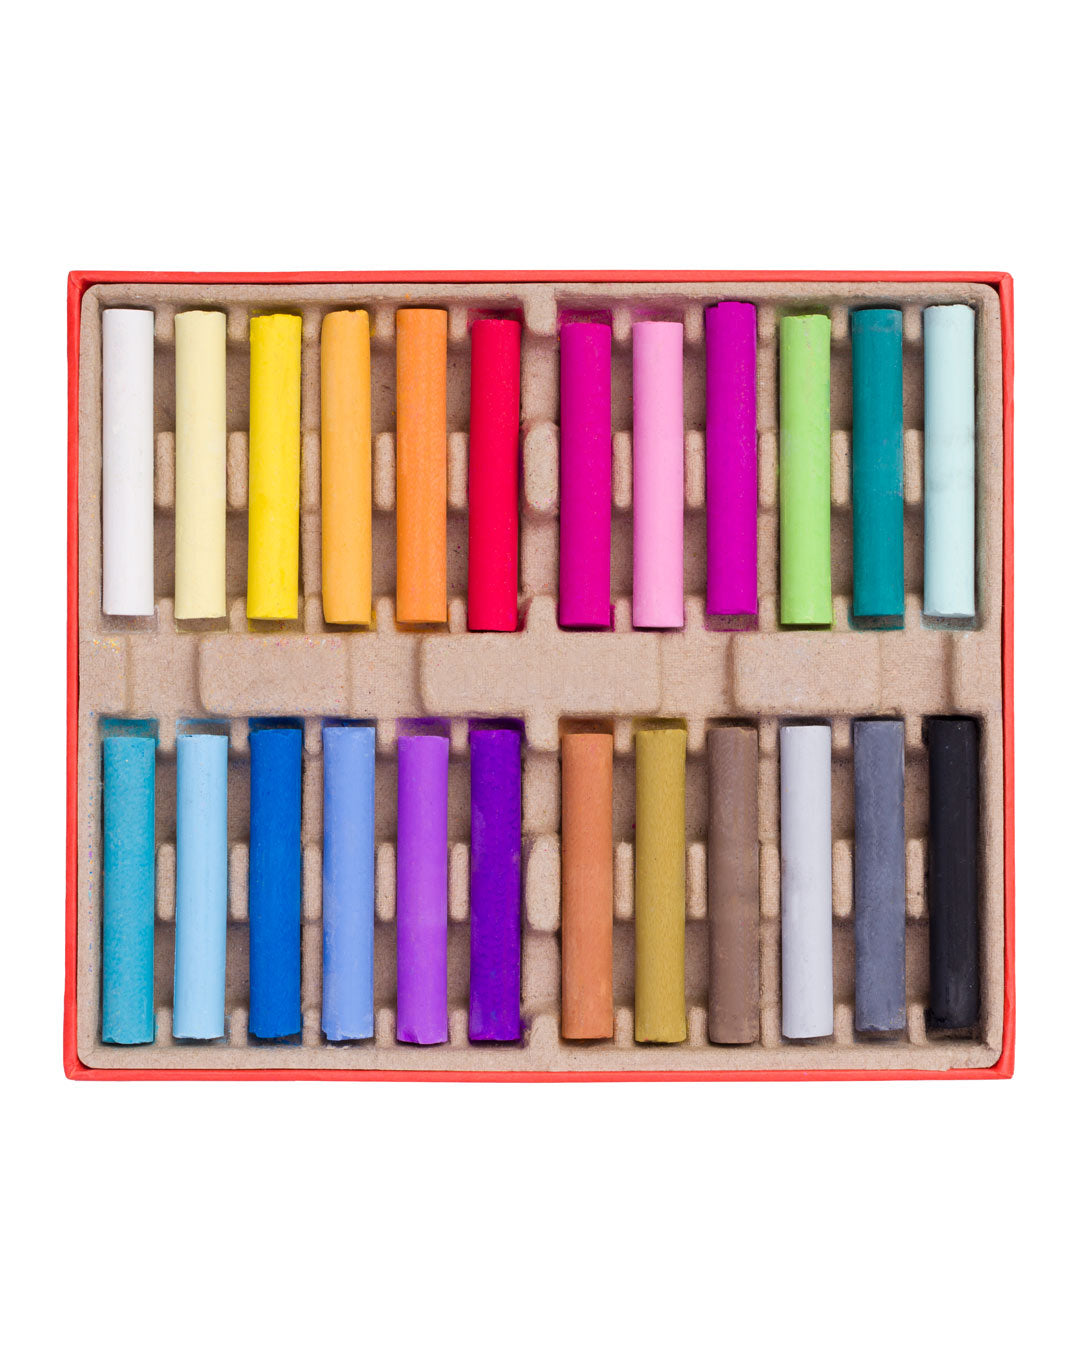 Artful: Art School in a Box - Soft Pastel Edition